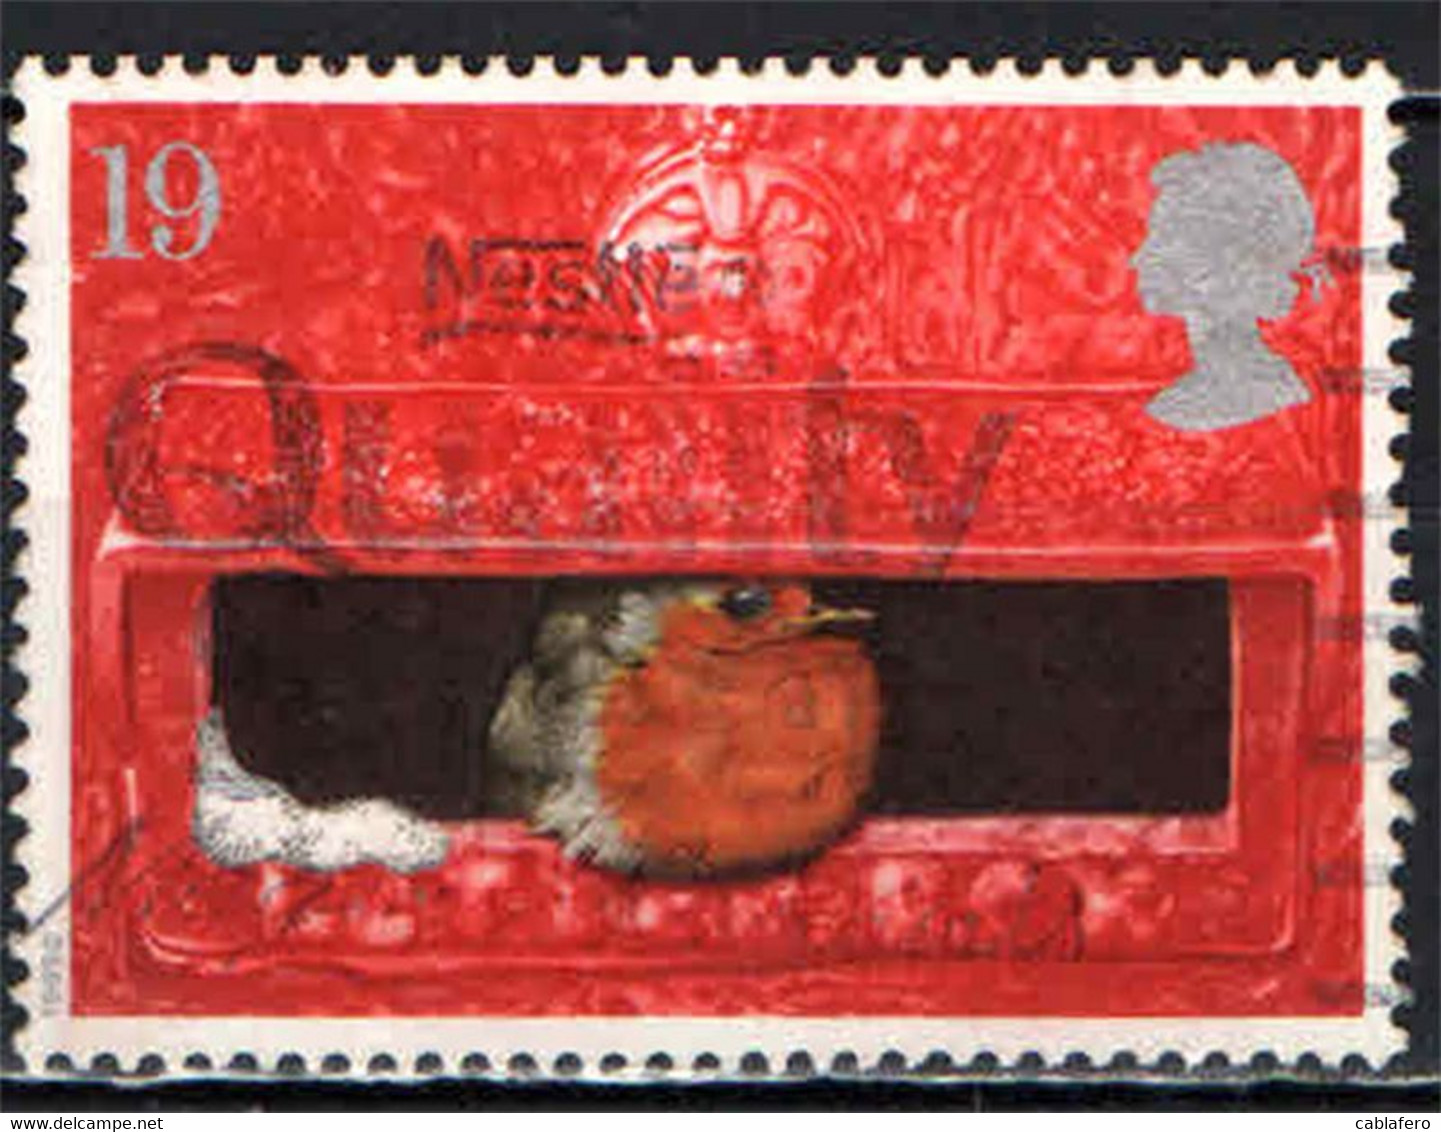 GRAN BRETAGNA - 1995 - NATALE - IL PETTIROSSO - UCCELLO - NELLA BUCA PER LETTERE - USATO - Used Stamps